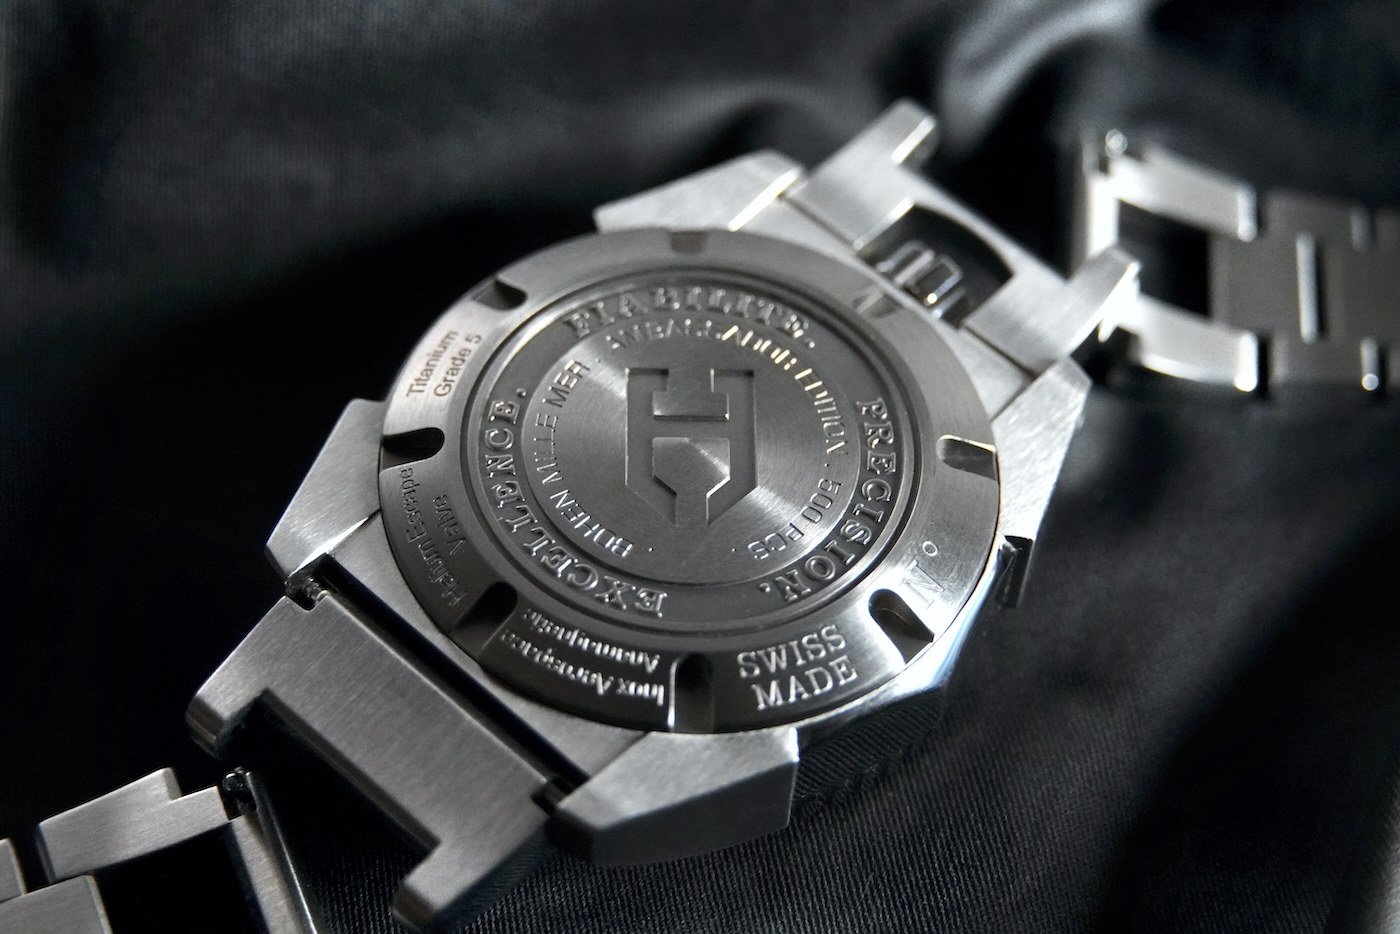 Bohen представляет элегантные часы для дайвинга Mille-Mer